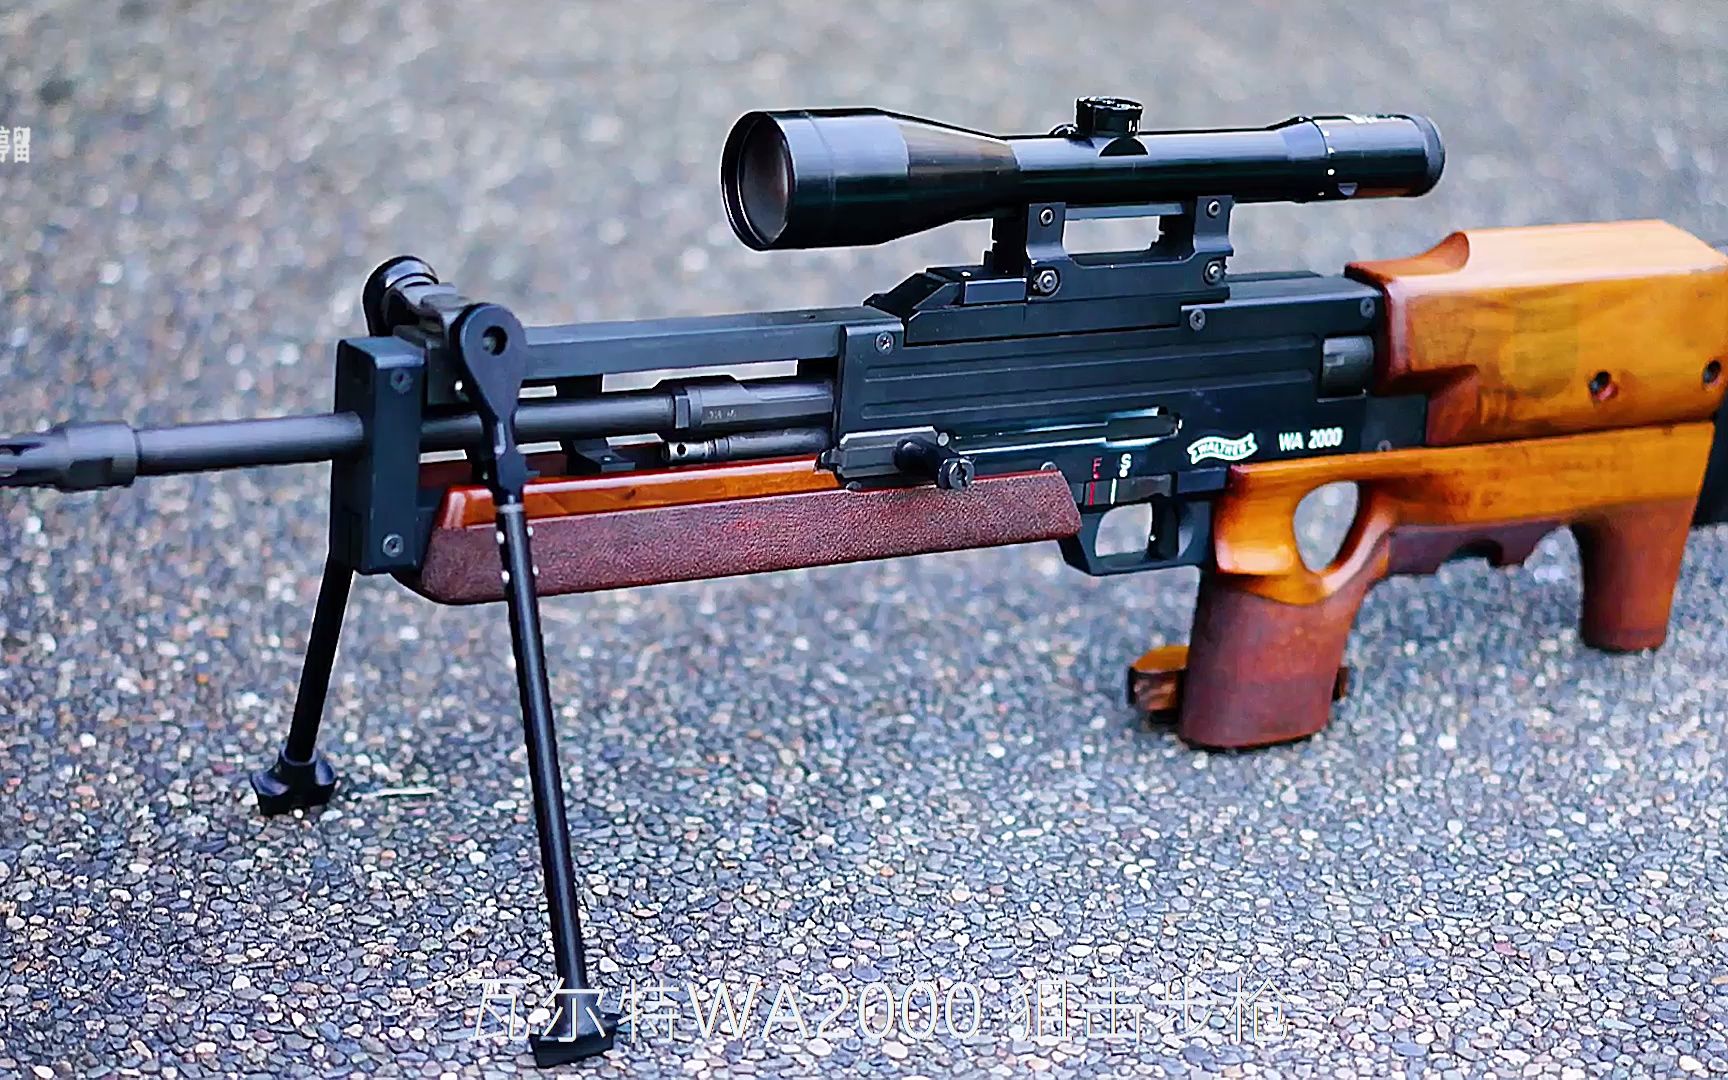 WA2000 狙击步枪，它并不像狙击更像是气枪，而且还贵的离谱